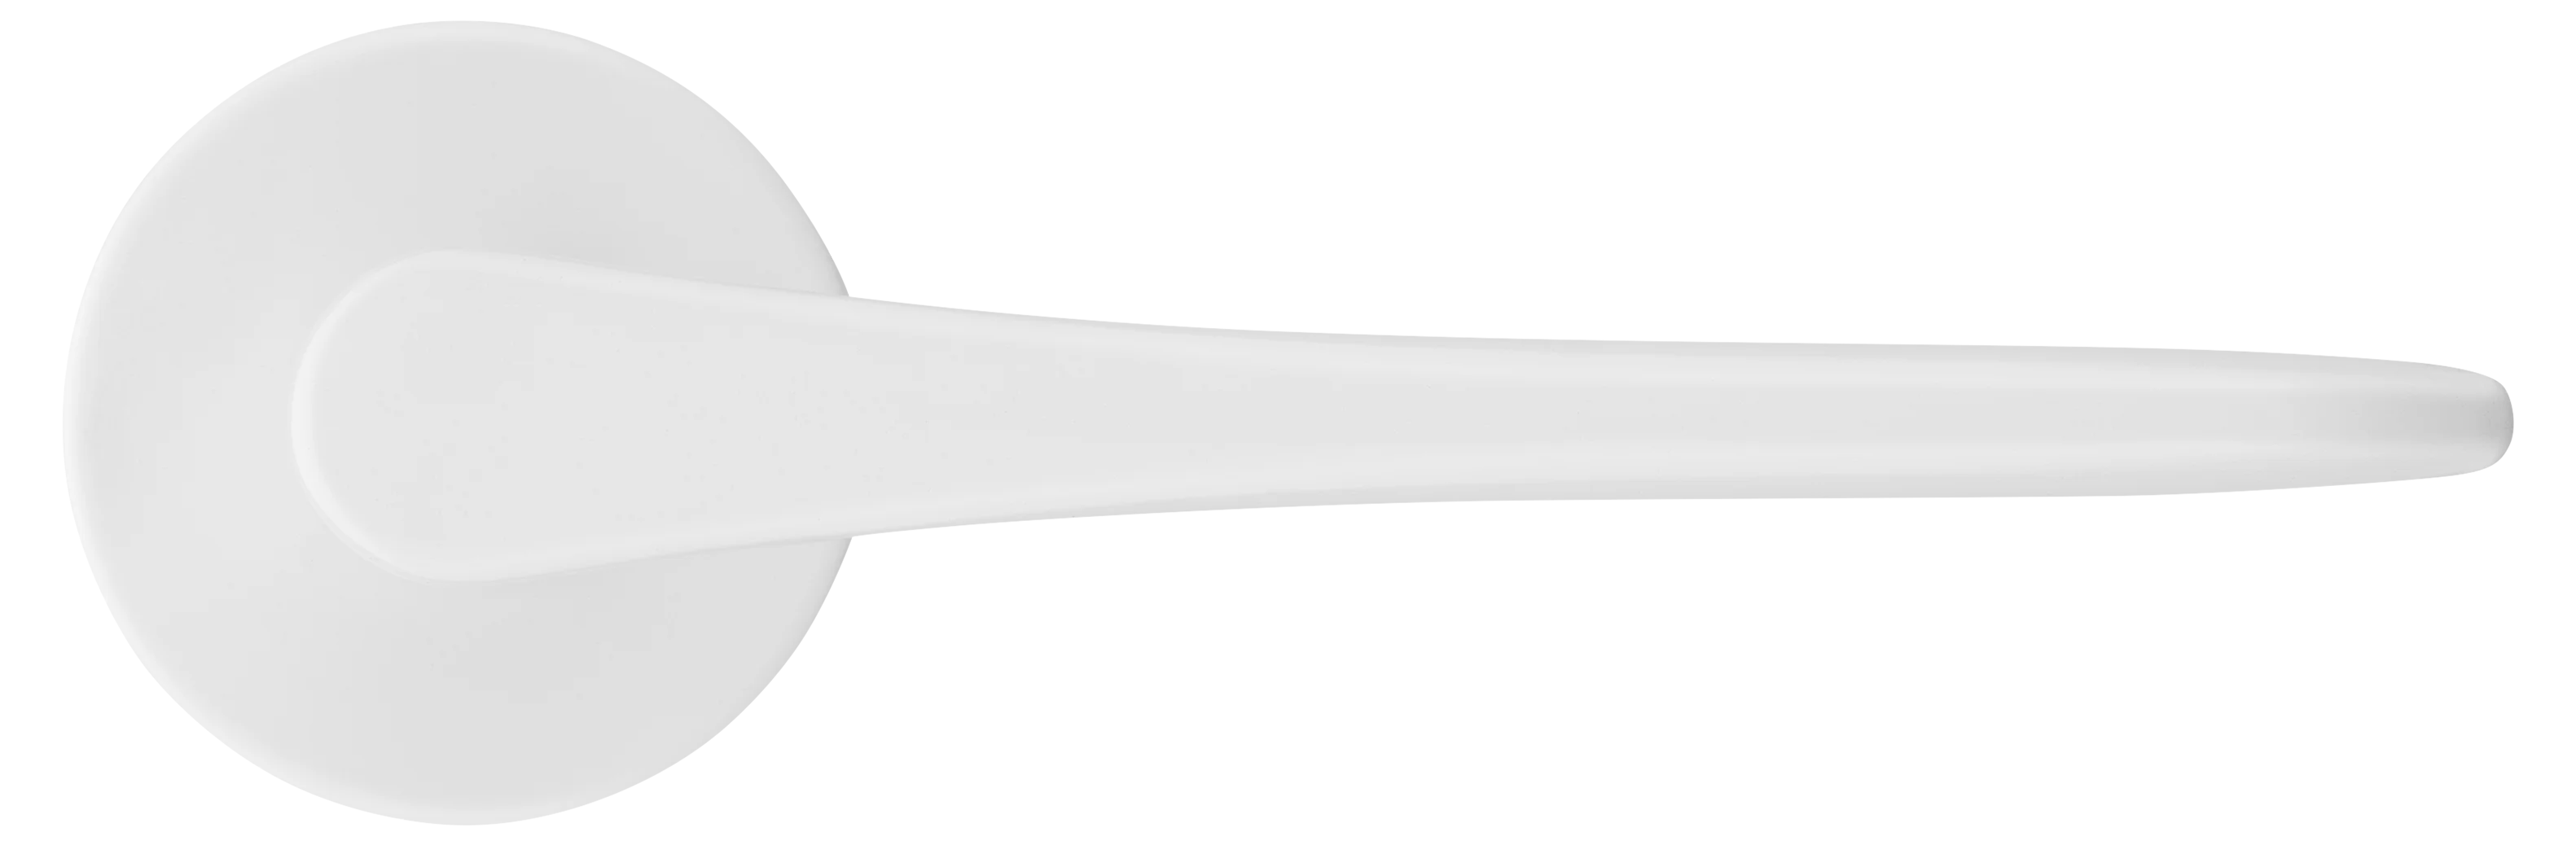 AULA R5 BIA, ручка дверная на розетке 7мм, цвет -  белый фото купить в Рязани